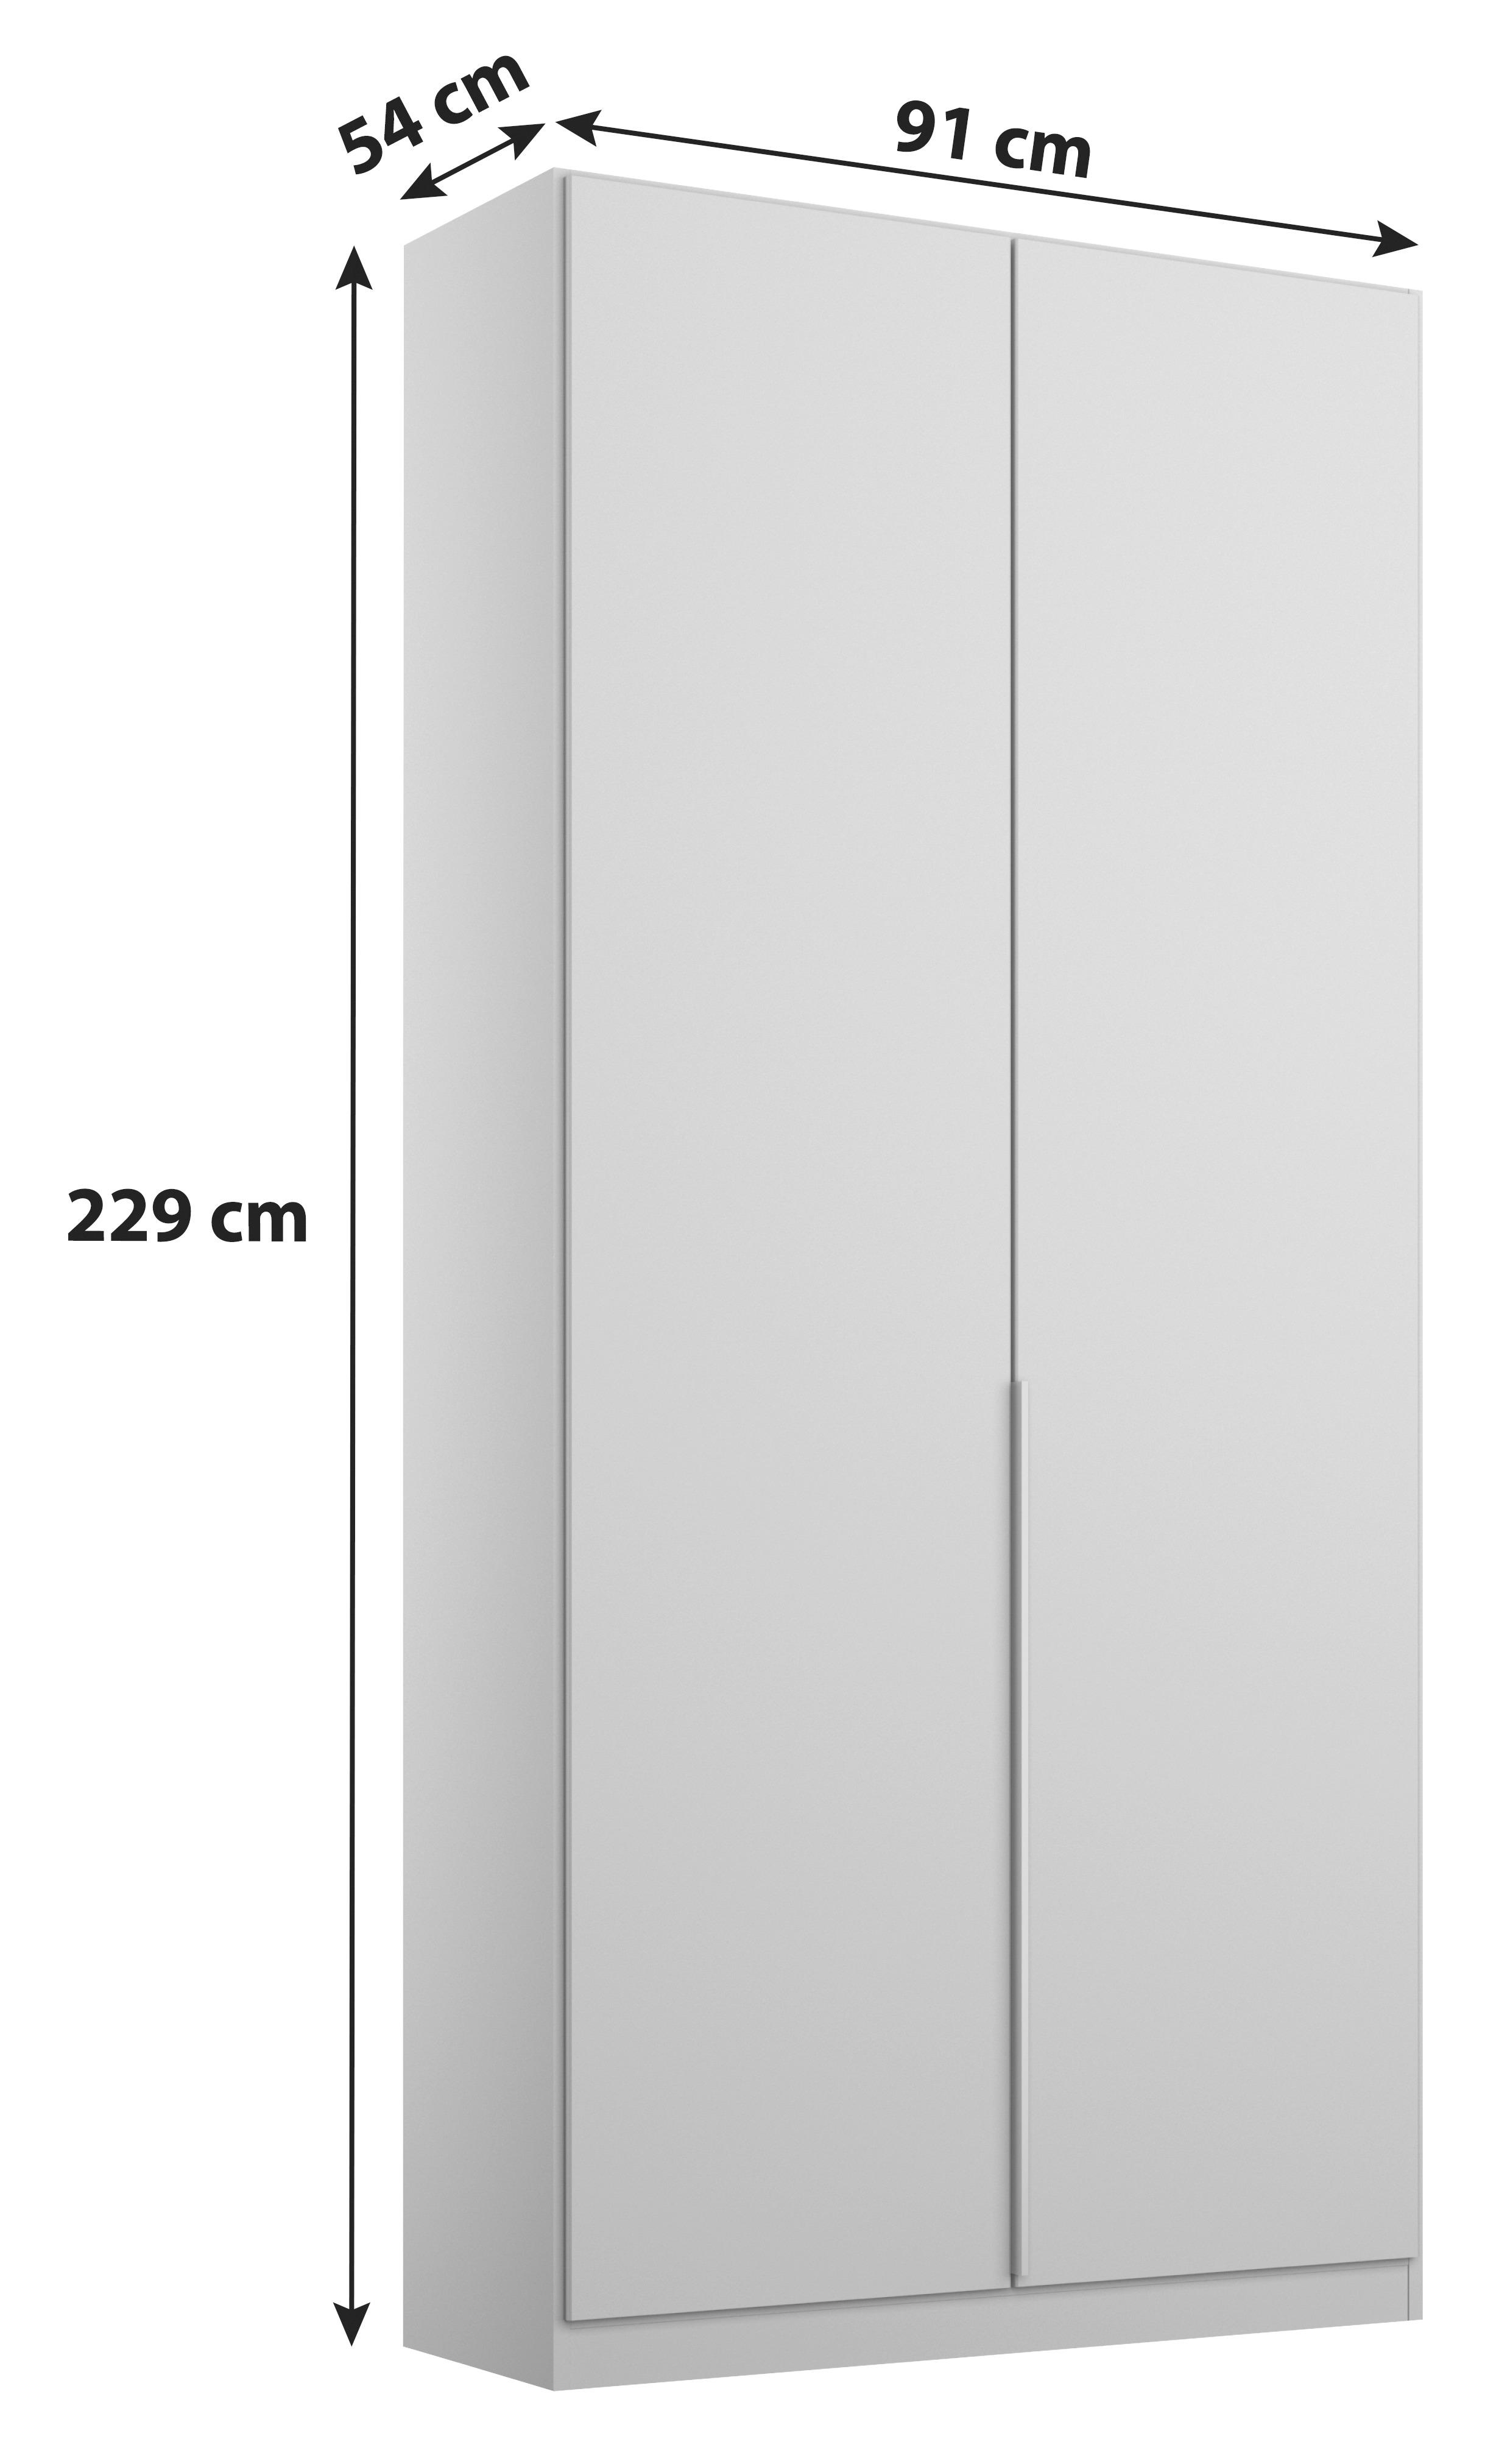 DREHTÜRENSCHRANK 2-türig Sonoma Eiche  - Alufarben/Sonoma Eiche, MODERN, Holzwerkstoff (91/229/54cm) - MID.YOU